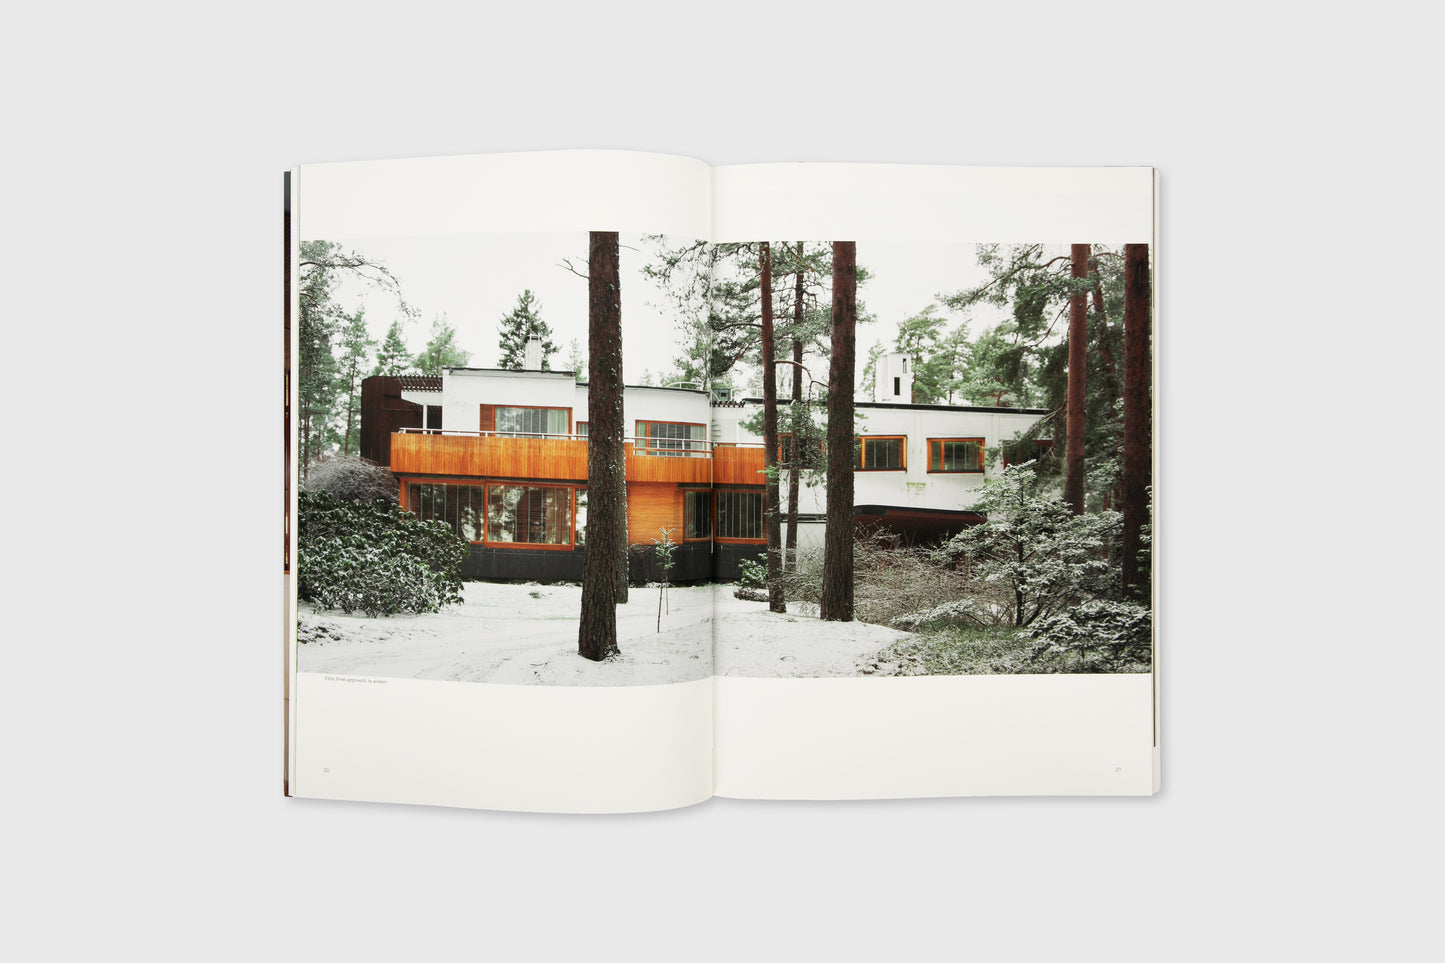 Residential Masterpieces 01: Alvar Aalto Villa Mairea